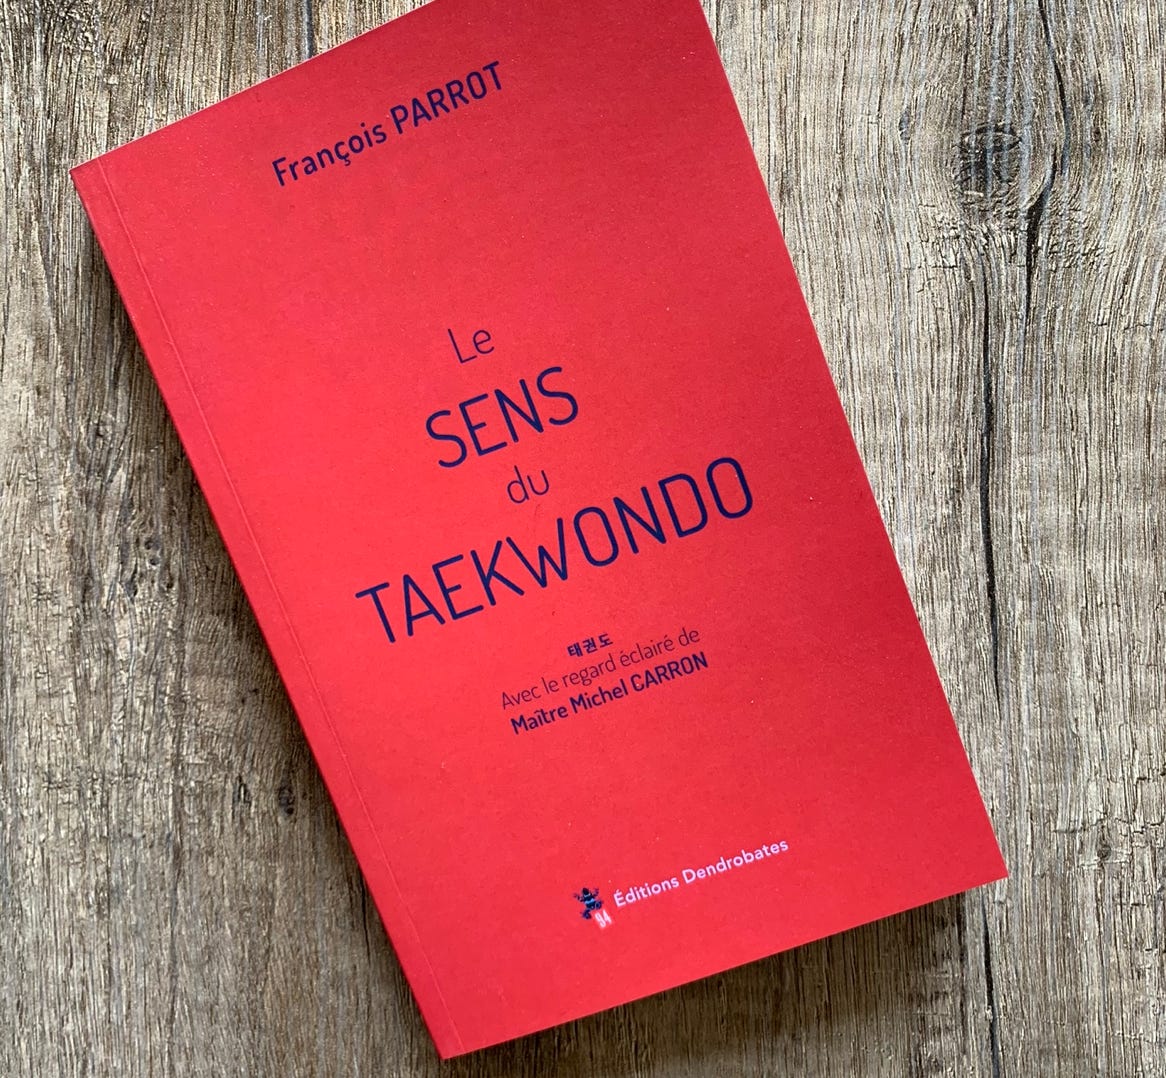 le sens du taekwondo ; livre ; taekwondo ; François PARROT ; Michel CARRON ; TKD